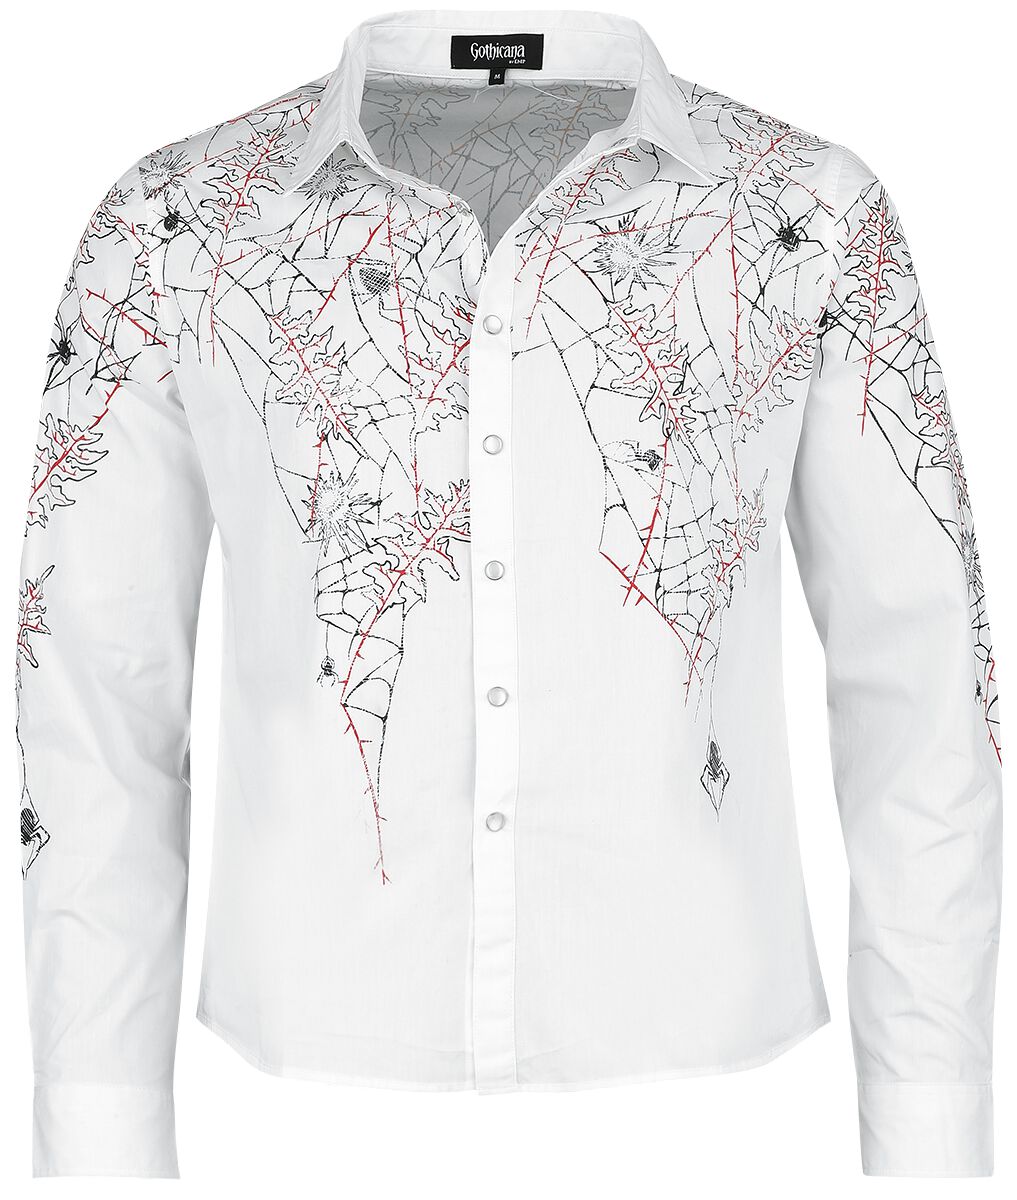 Gothicana by EMP - Gothic Langarmhemd - Shirt with Spiderweb Print - S bis XXL - für Männer - Größe L - weiß